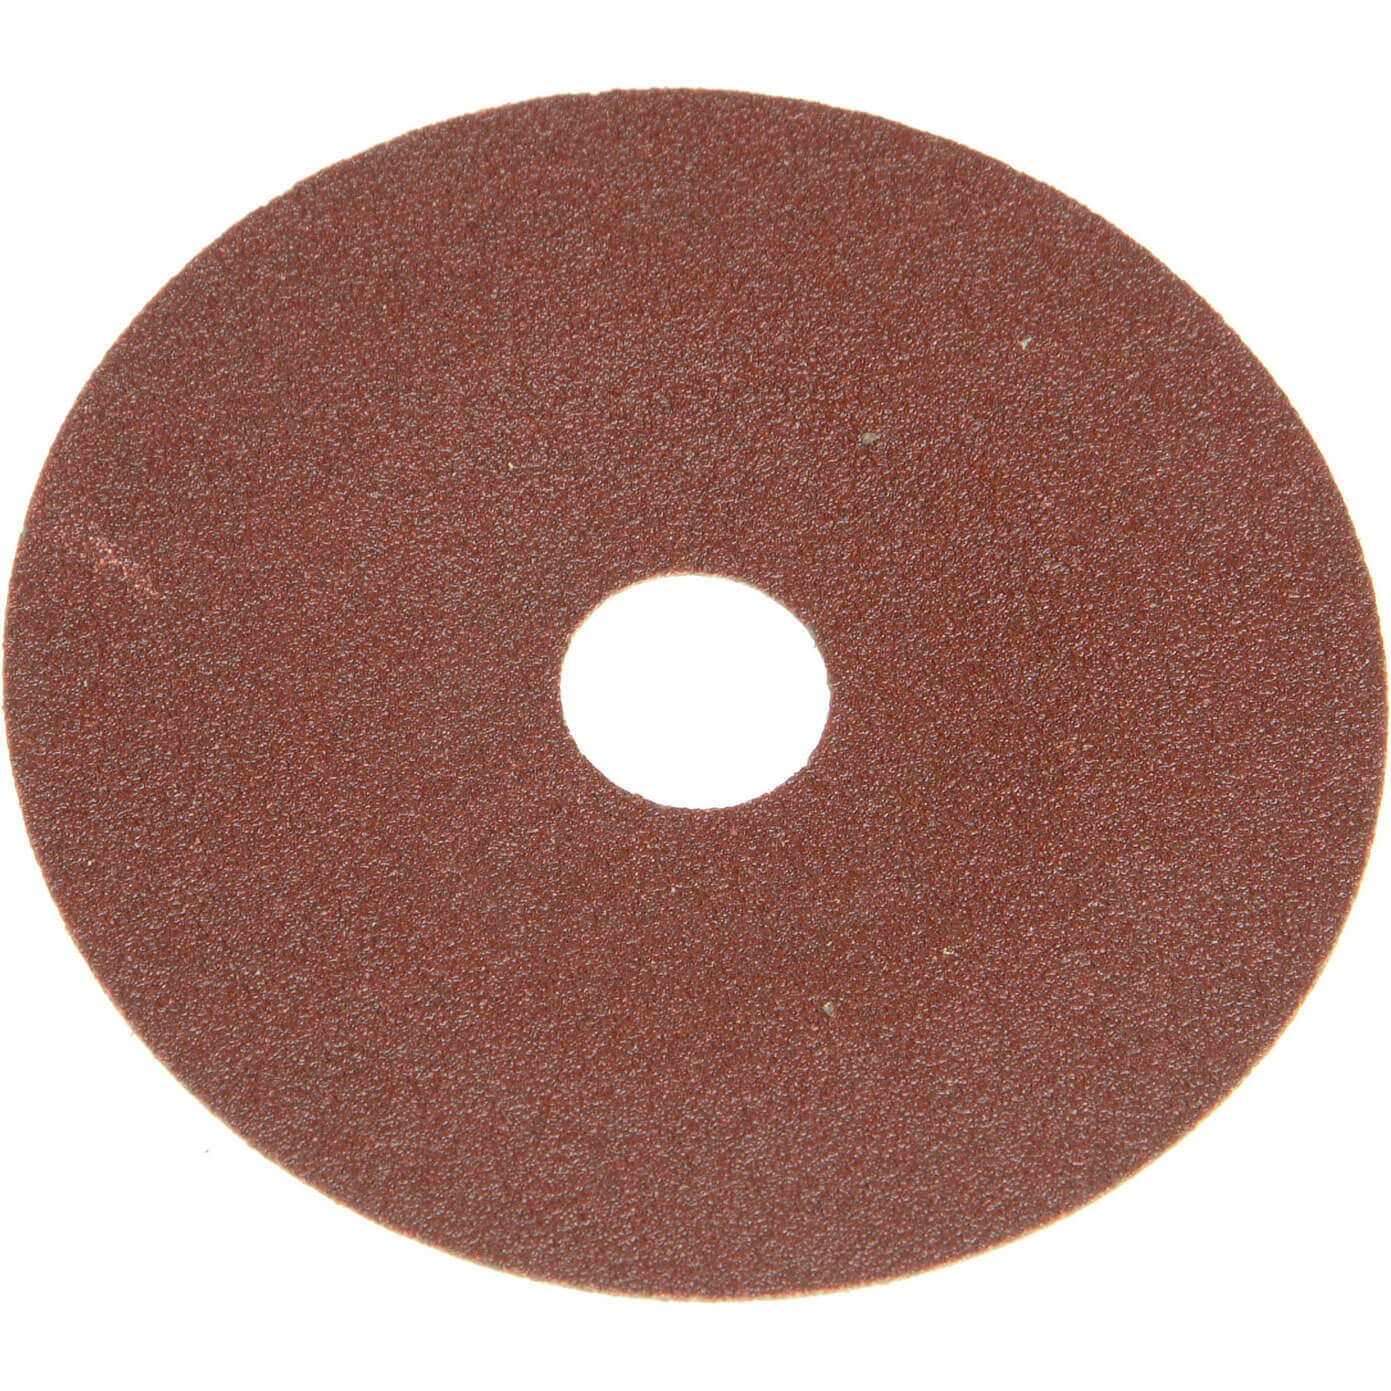 Photos - Abrasive Wheel / Belt Faithfull 178mm Resin Bonded Sanding Discs 178mm 120g Pack of 25 FAIAD1781 